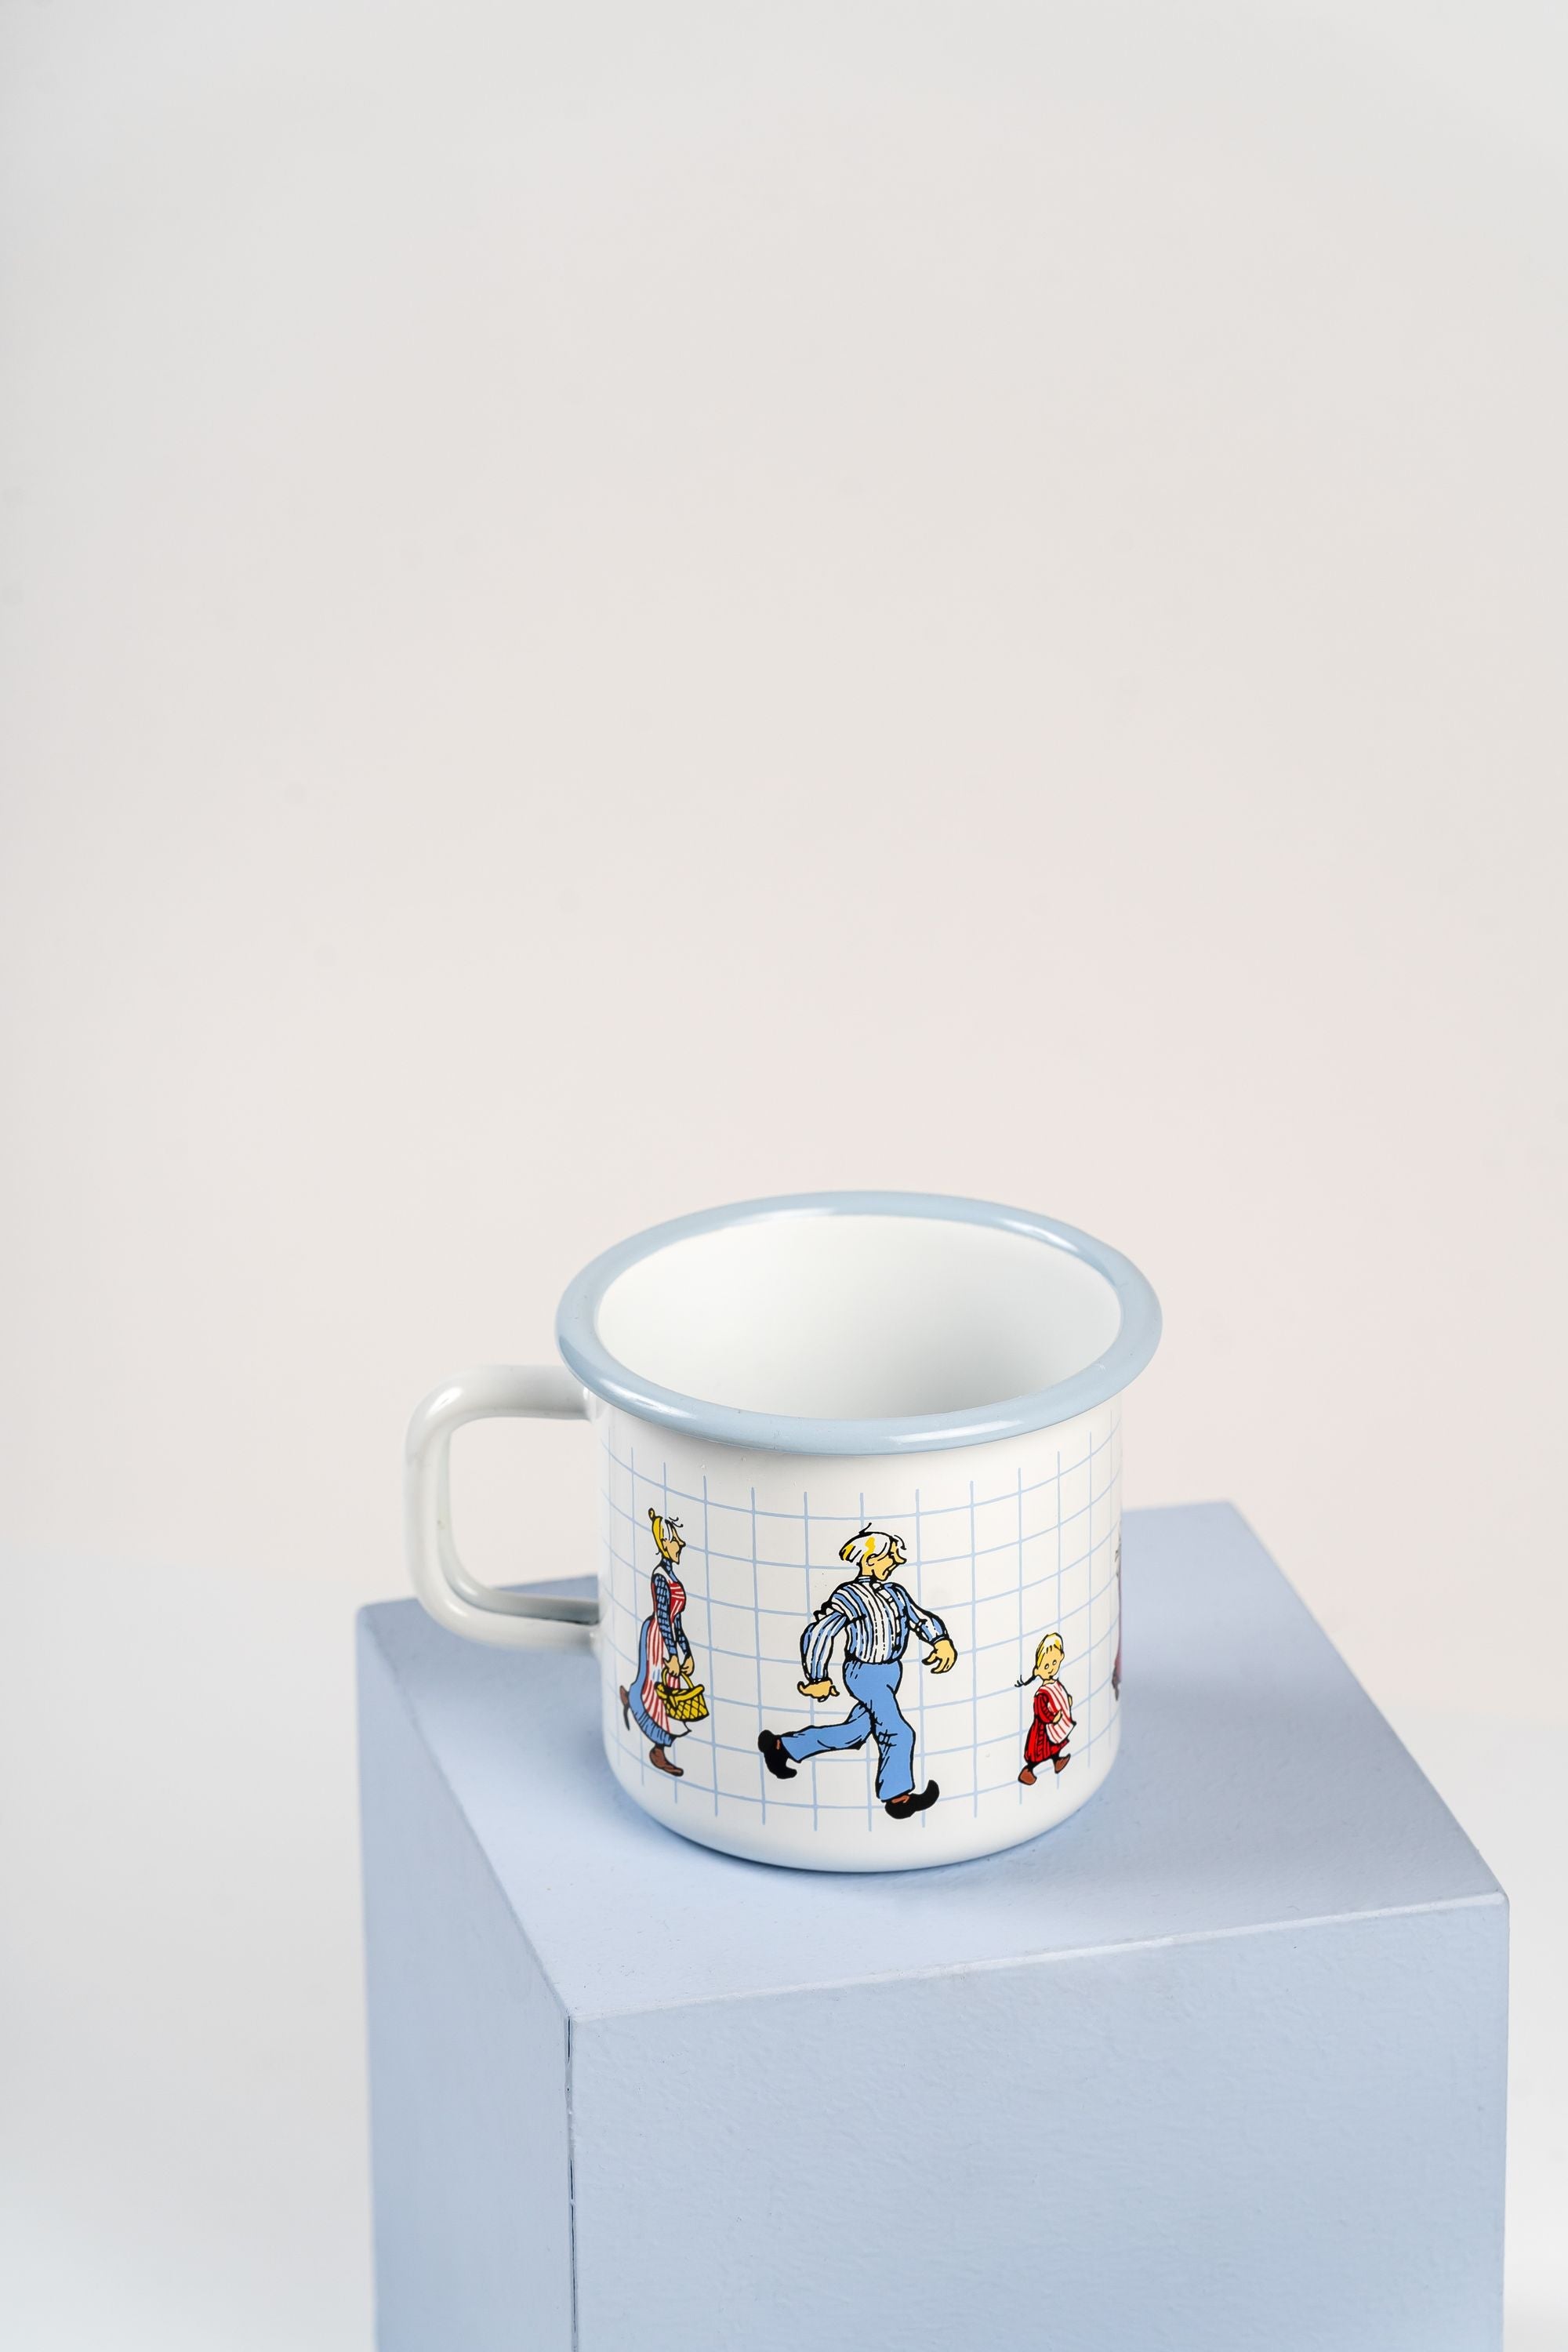 Lönnerberga搪瓷杯的Muurla Emil，Katthult folks